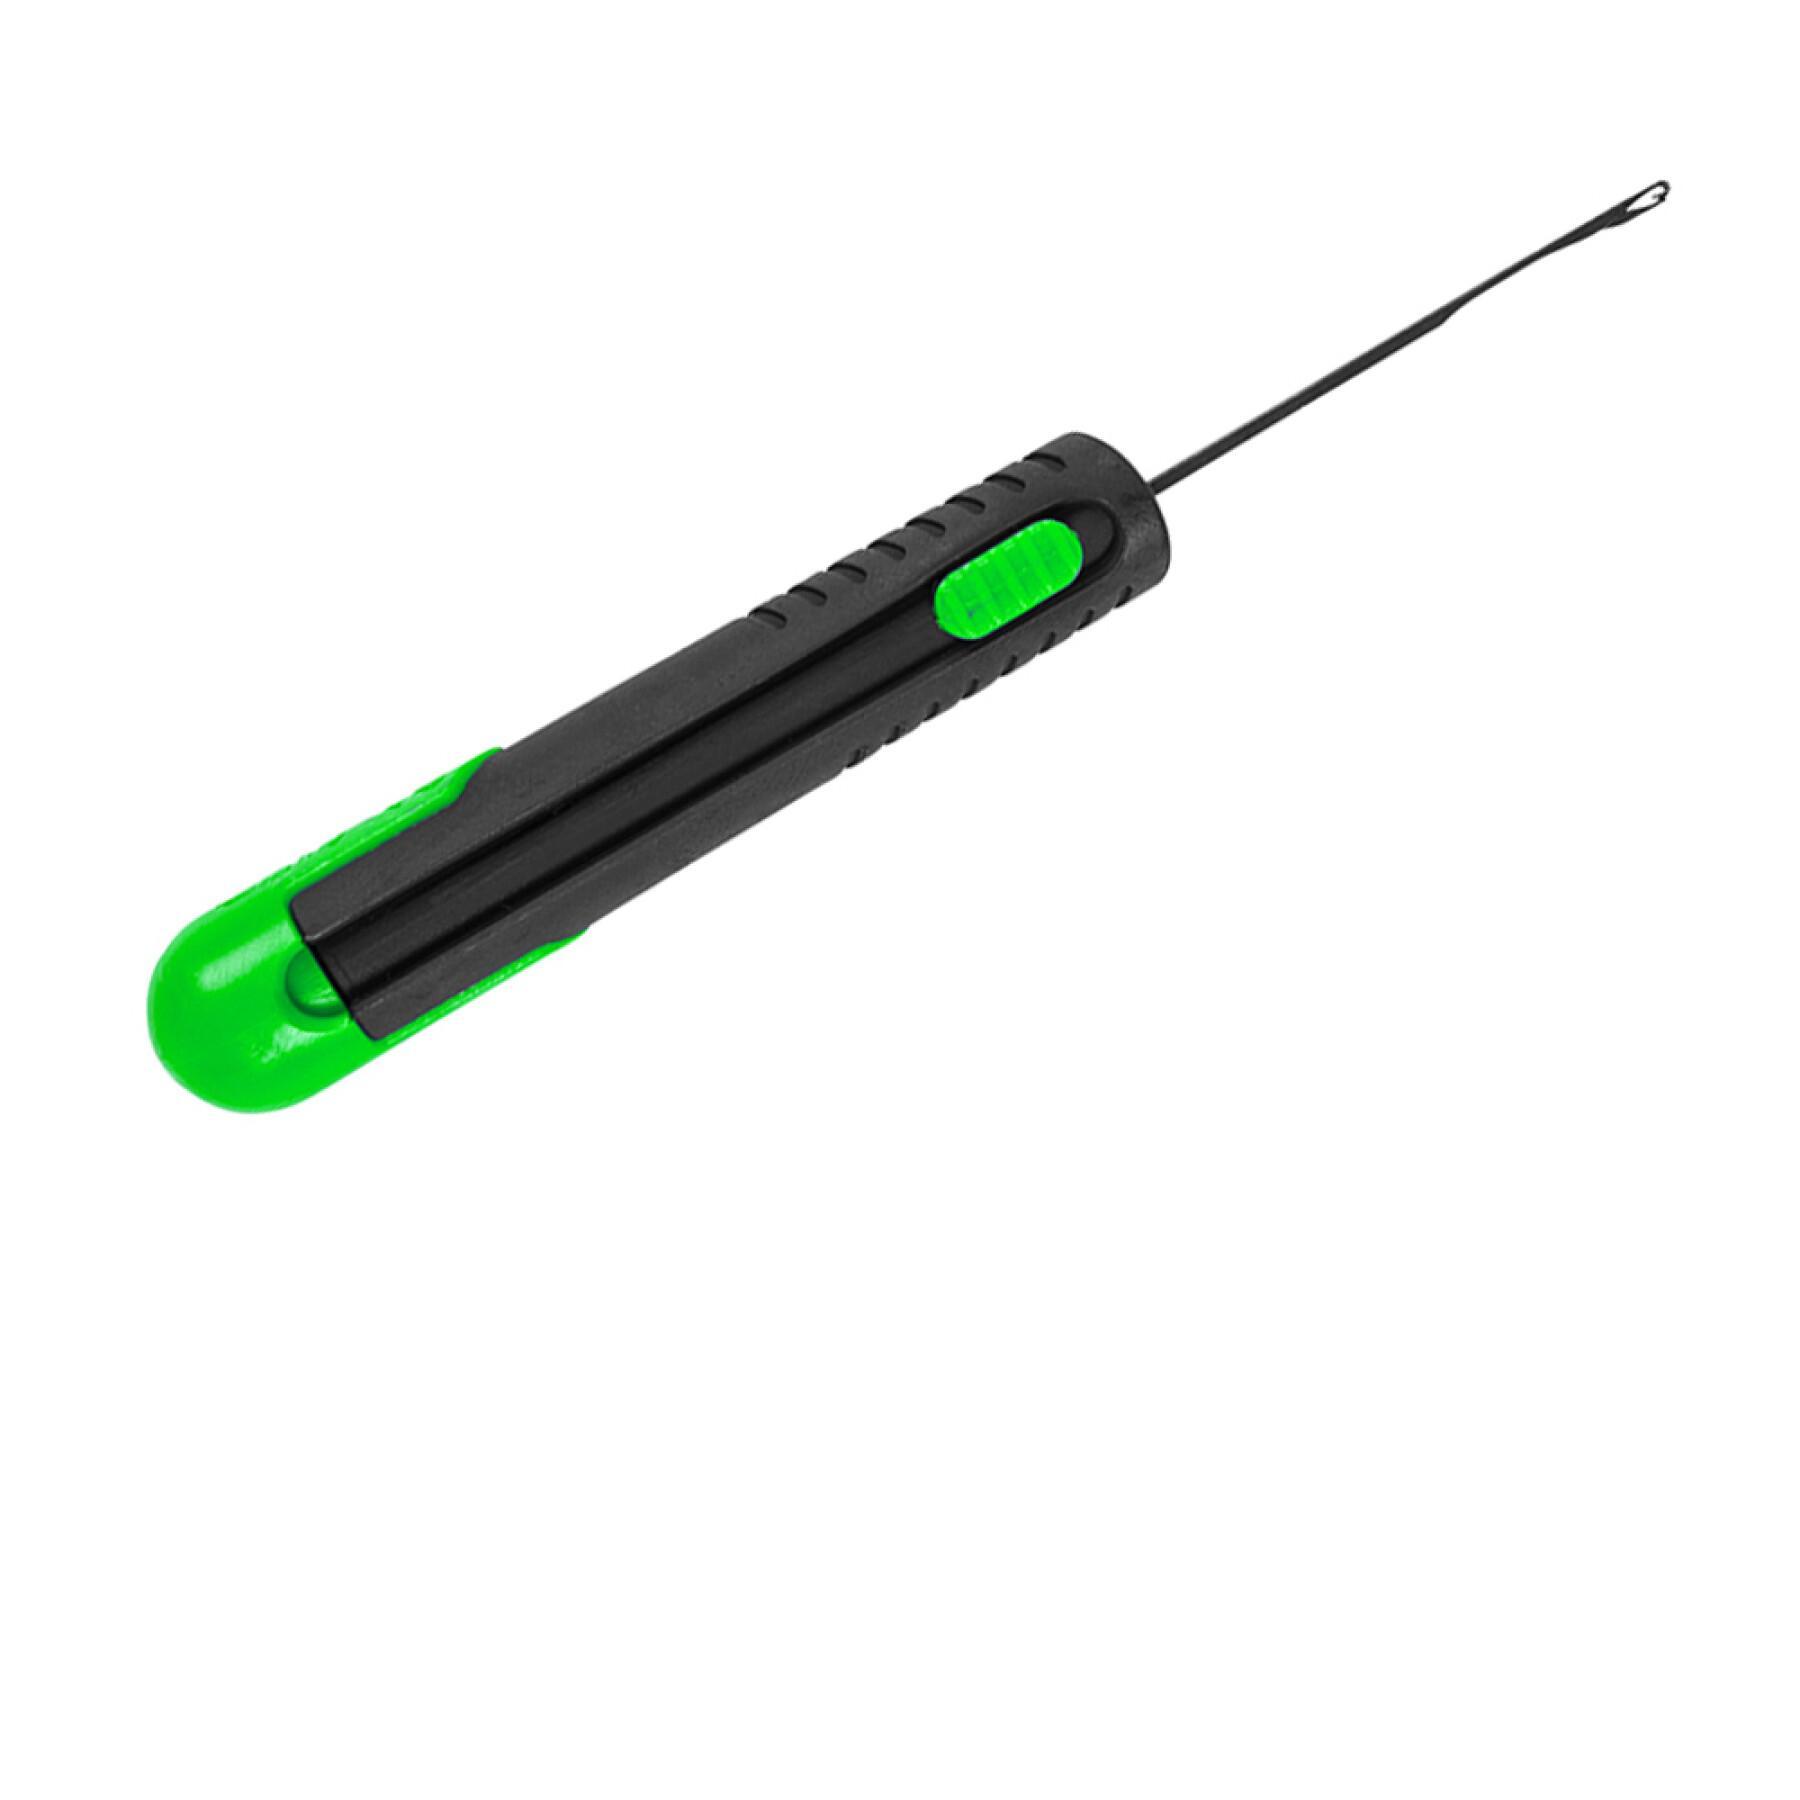 Needle Avid Titanium retracta - splicing x5